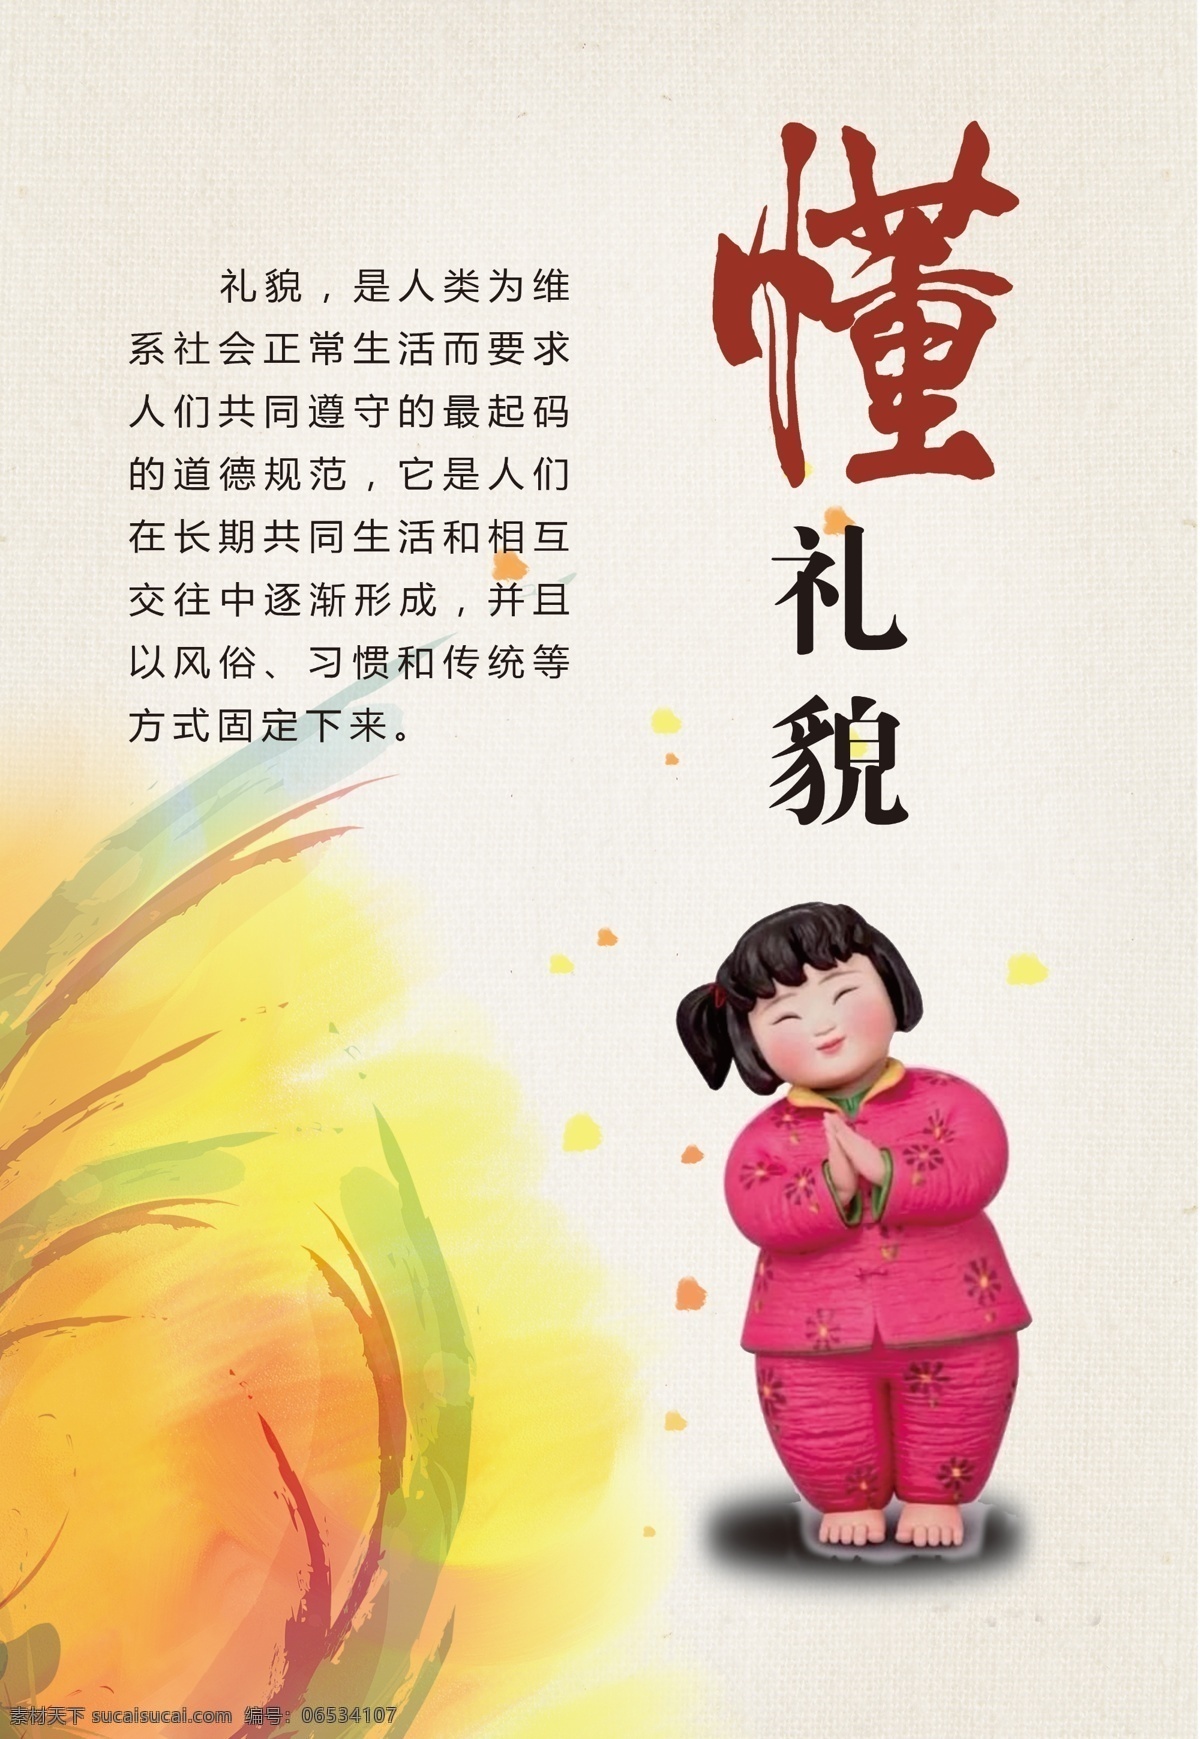 幼儿园 中国风 民族风 礼仪 文明 健康教育 宣传 瘭 动漫动画